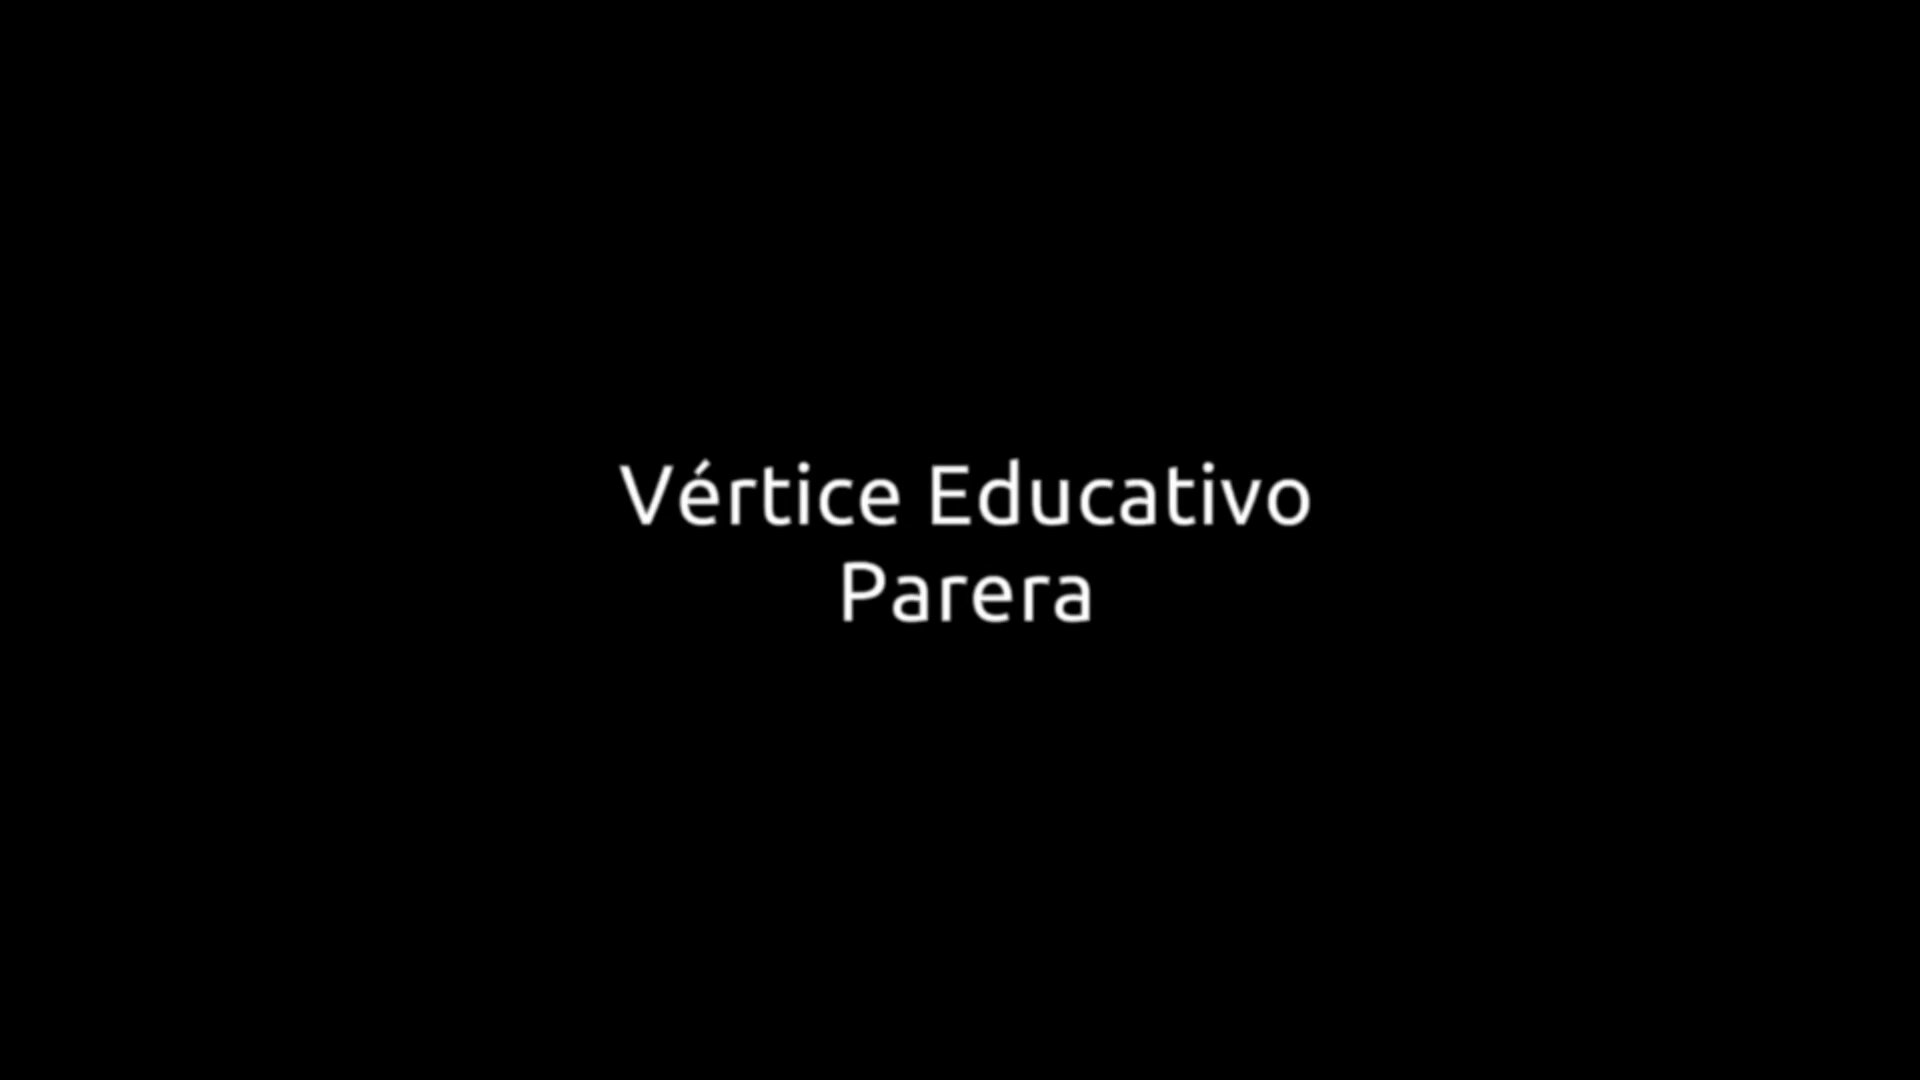 Territorio Parera. Video Minuto Vértice Educativo Parera